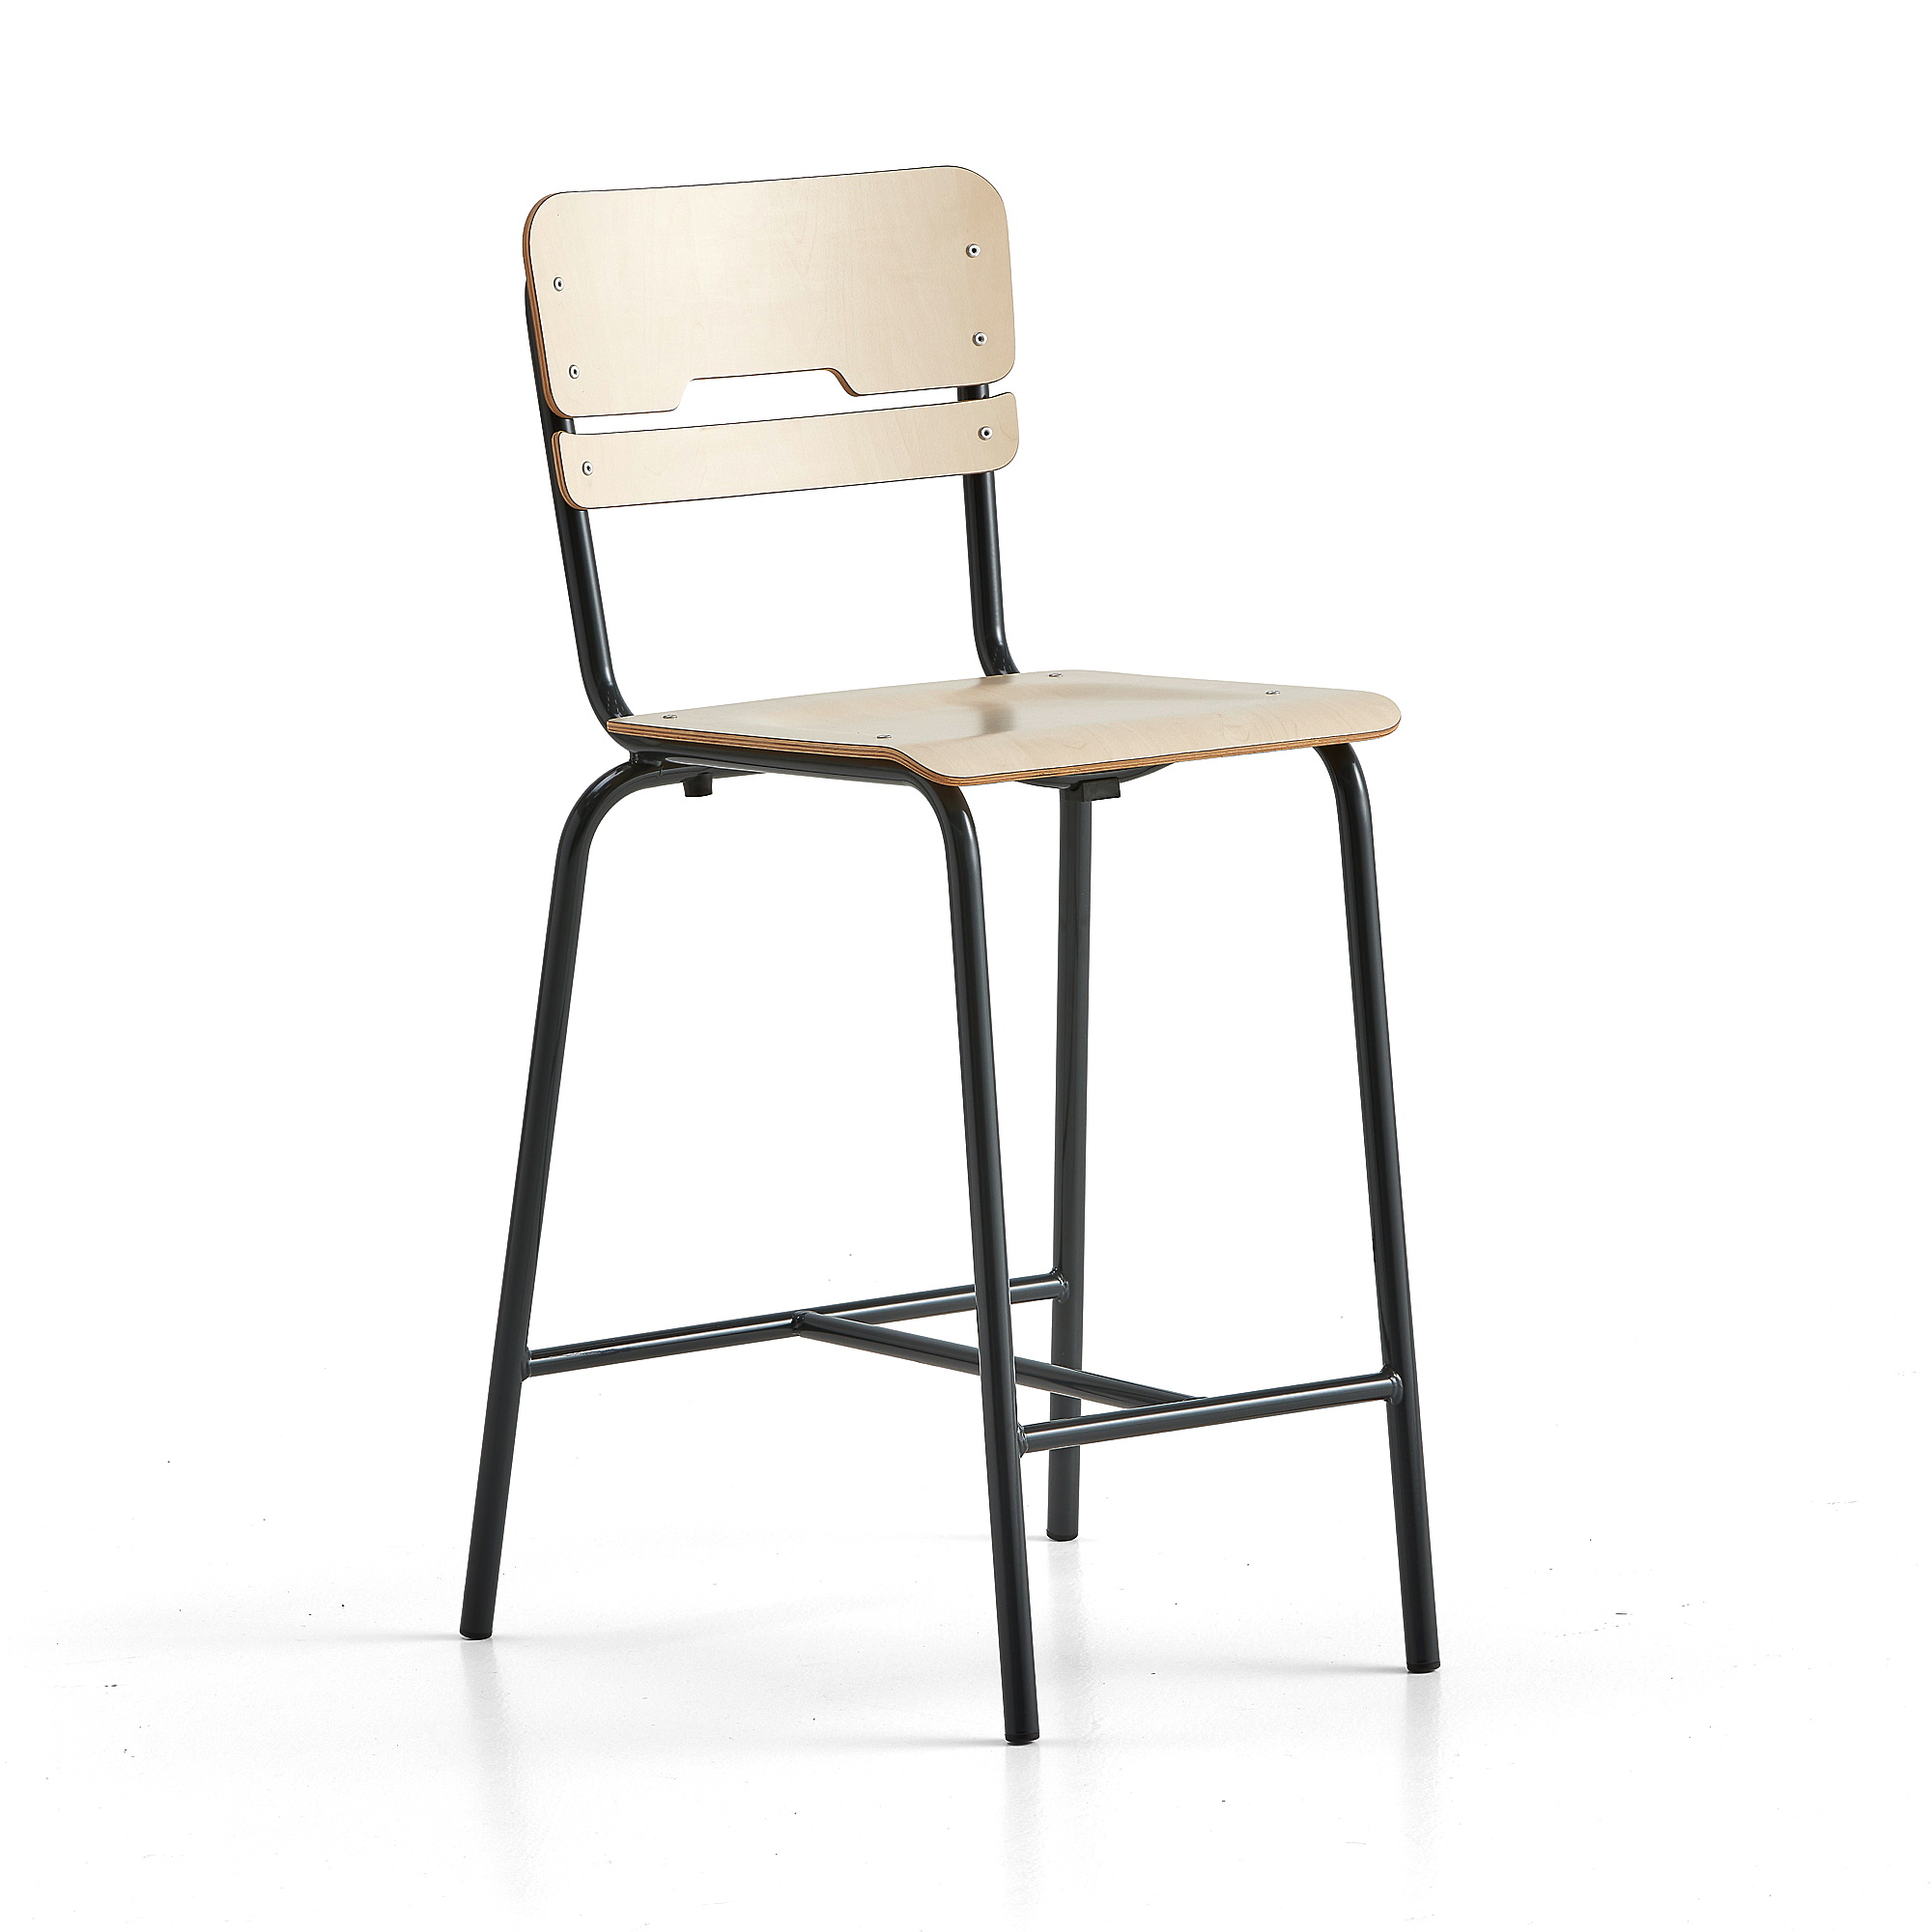 Školní židle SCIENTIA, sedák 390x390 mm, výška 650 mm, antracitová/bříza